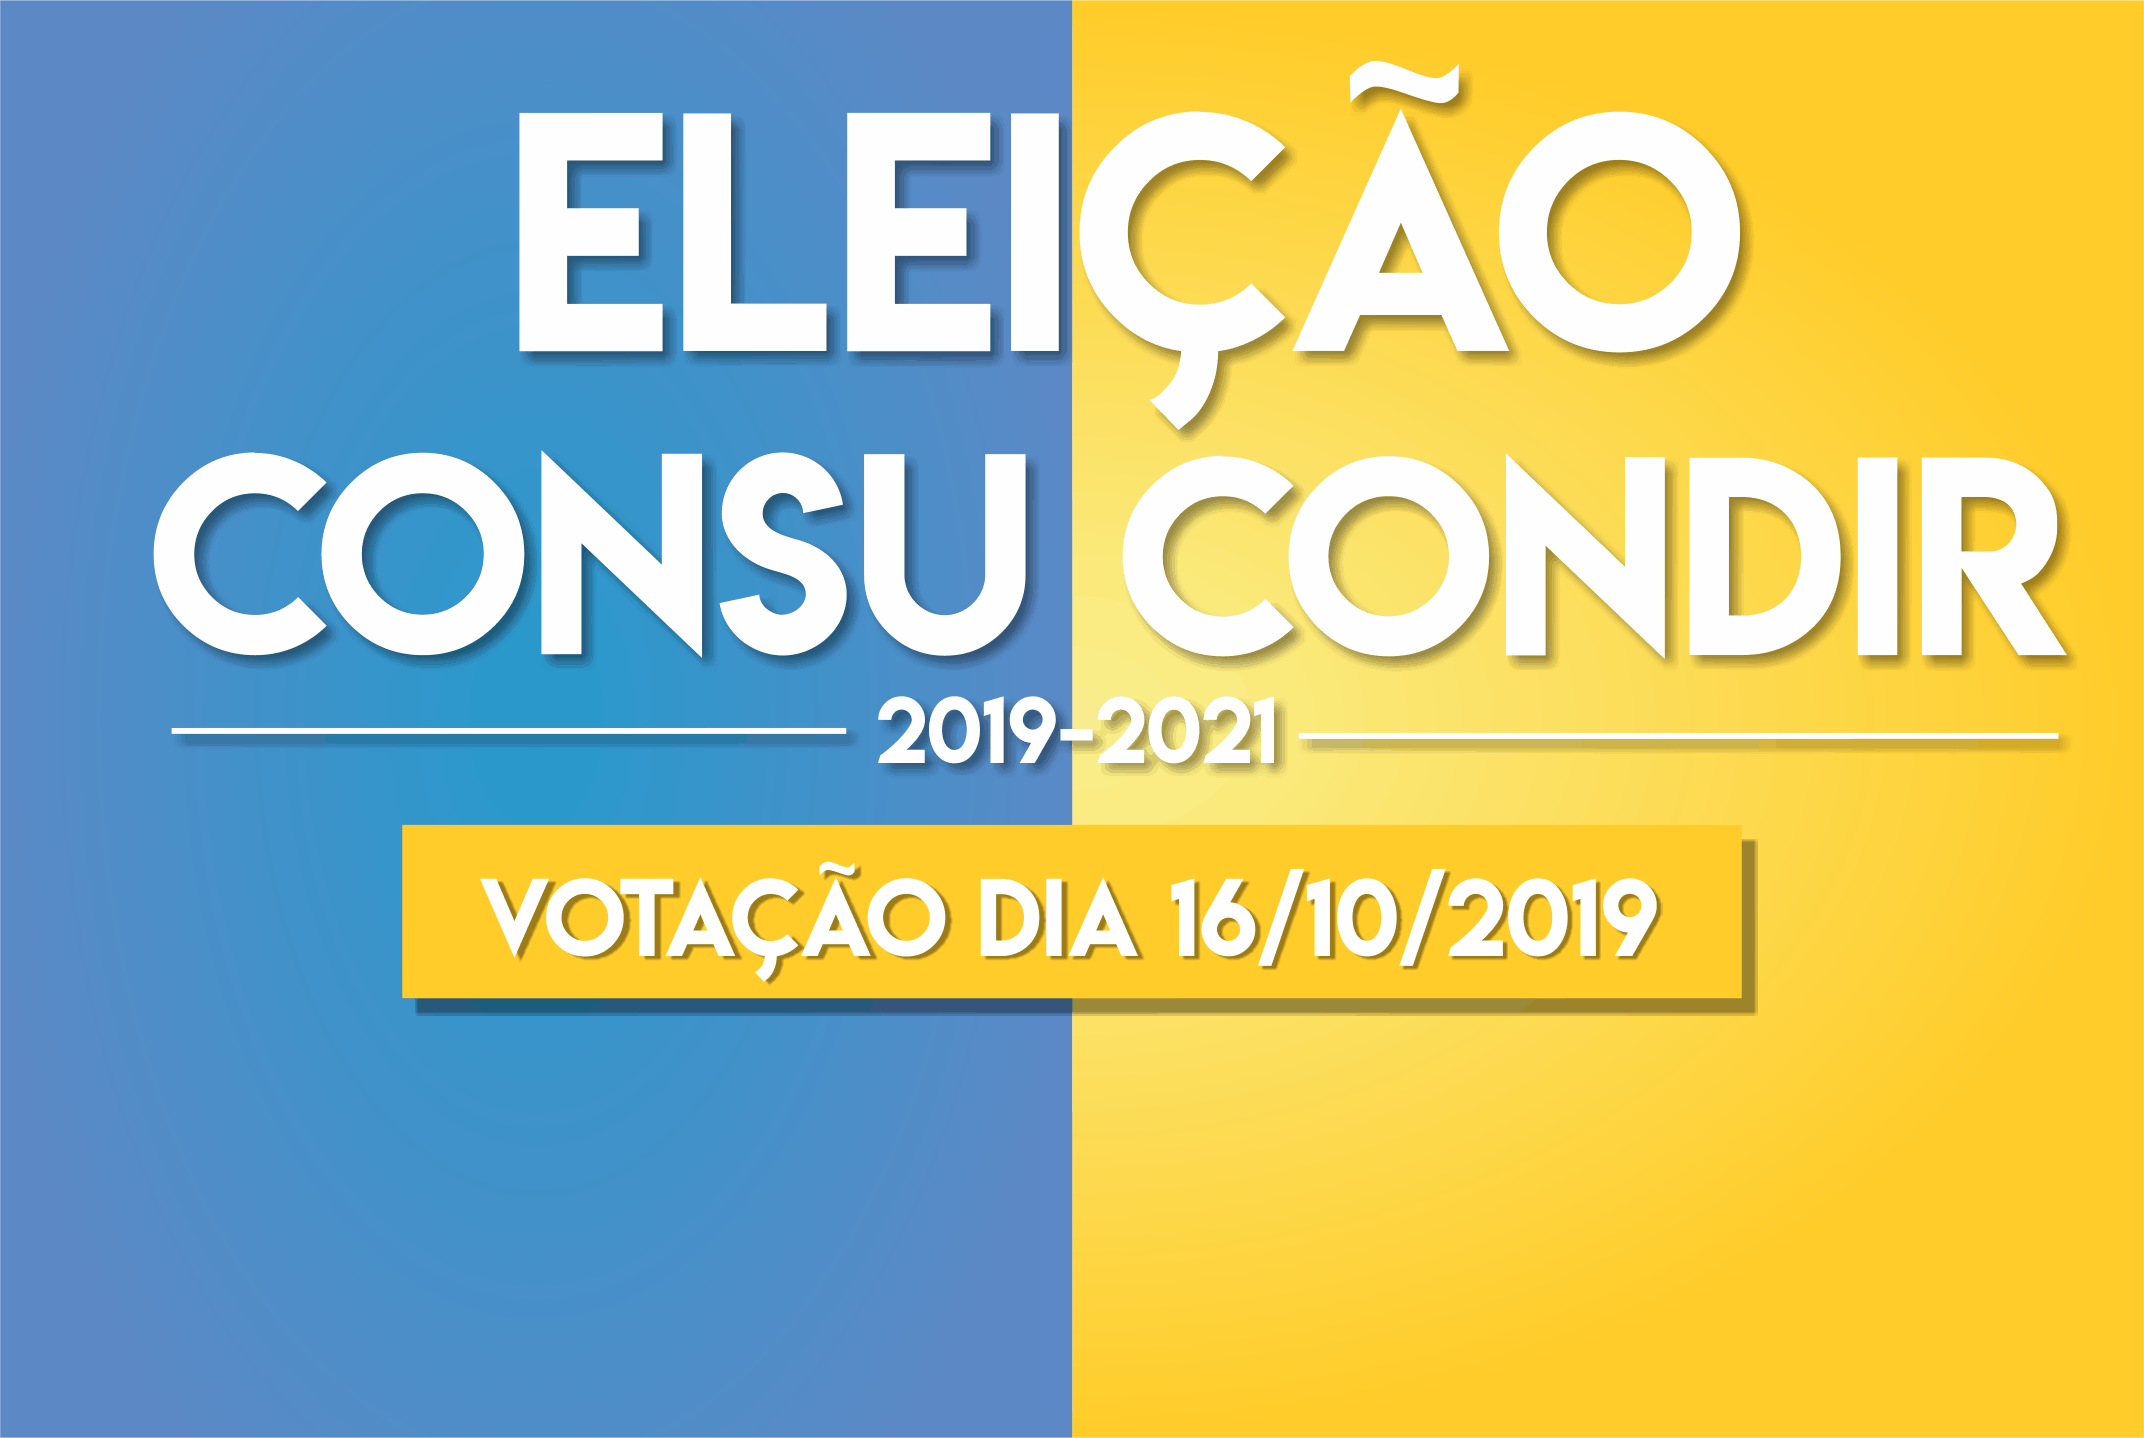 Comissão Eleitoral divulga candidaturas homologadas para CONSU/CONDIR